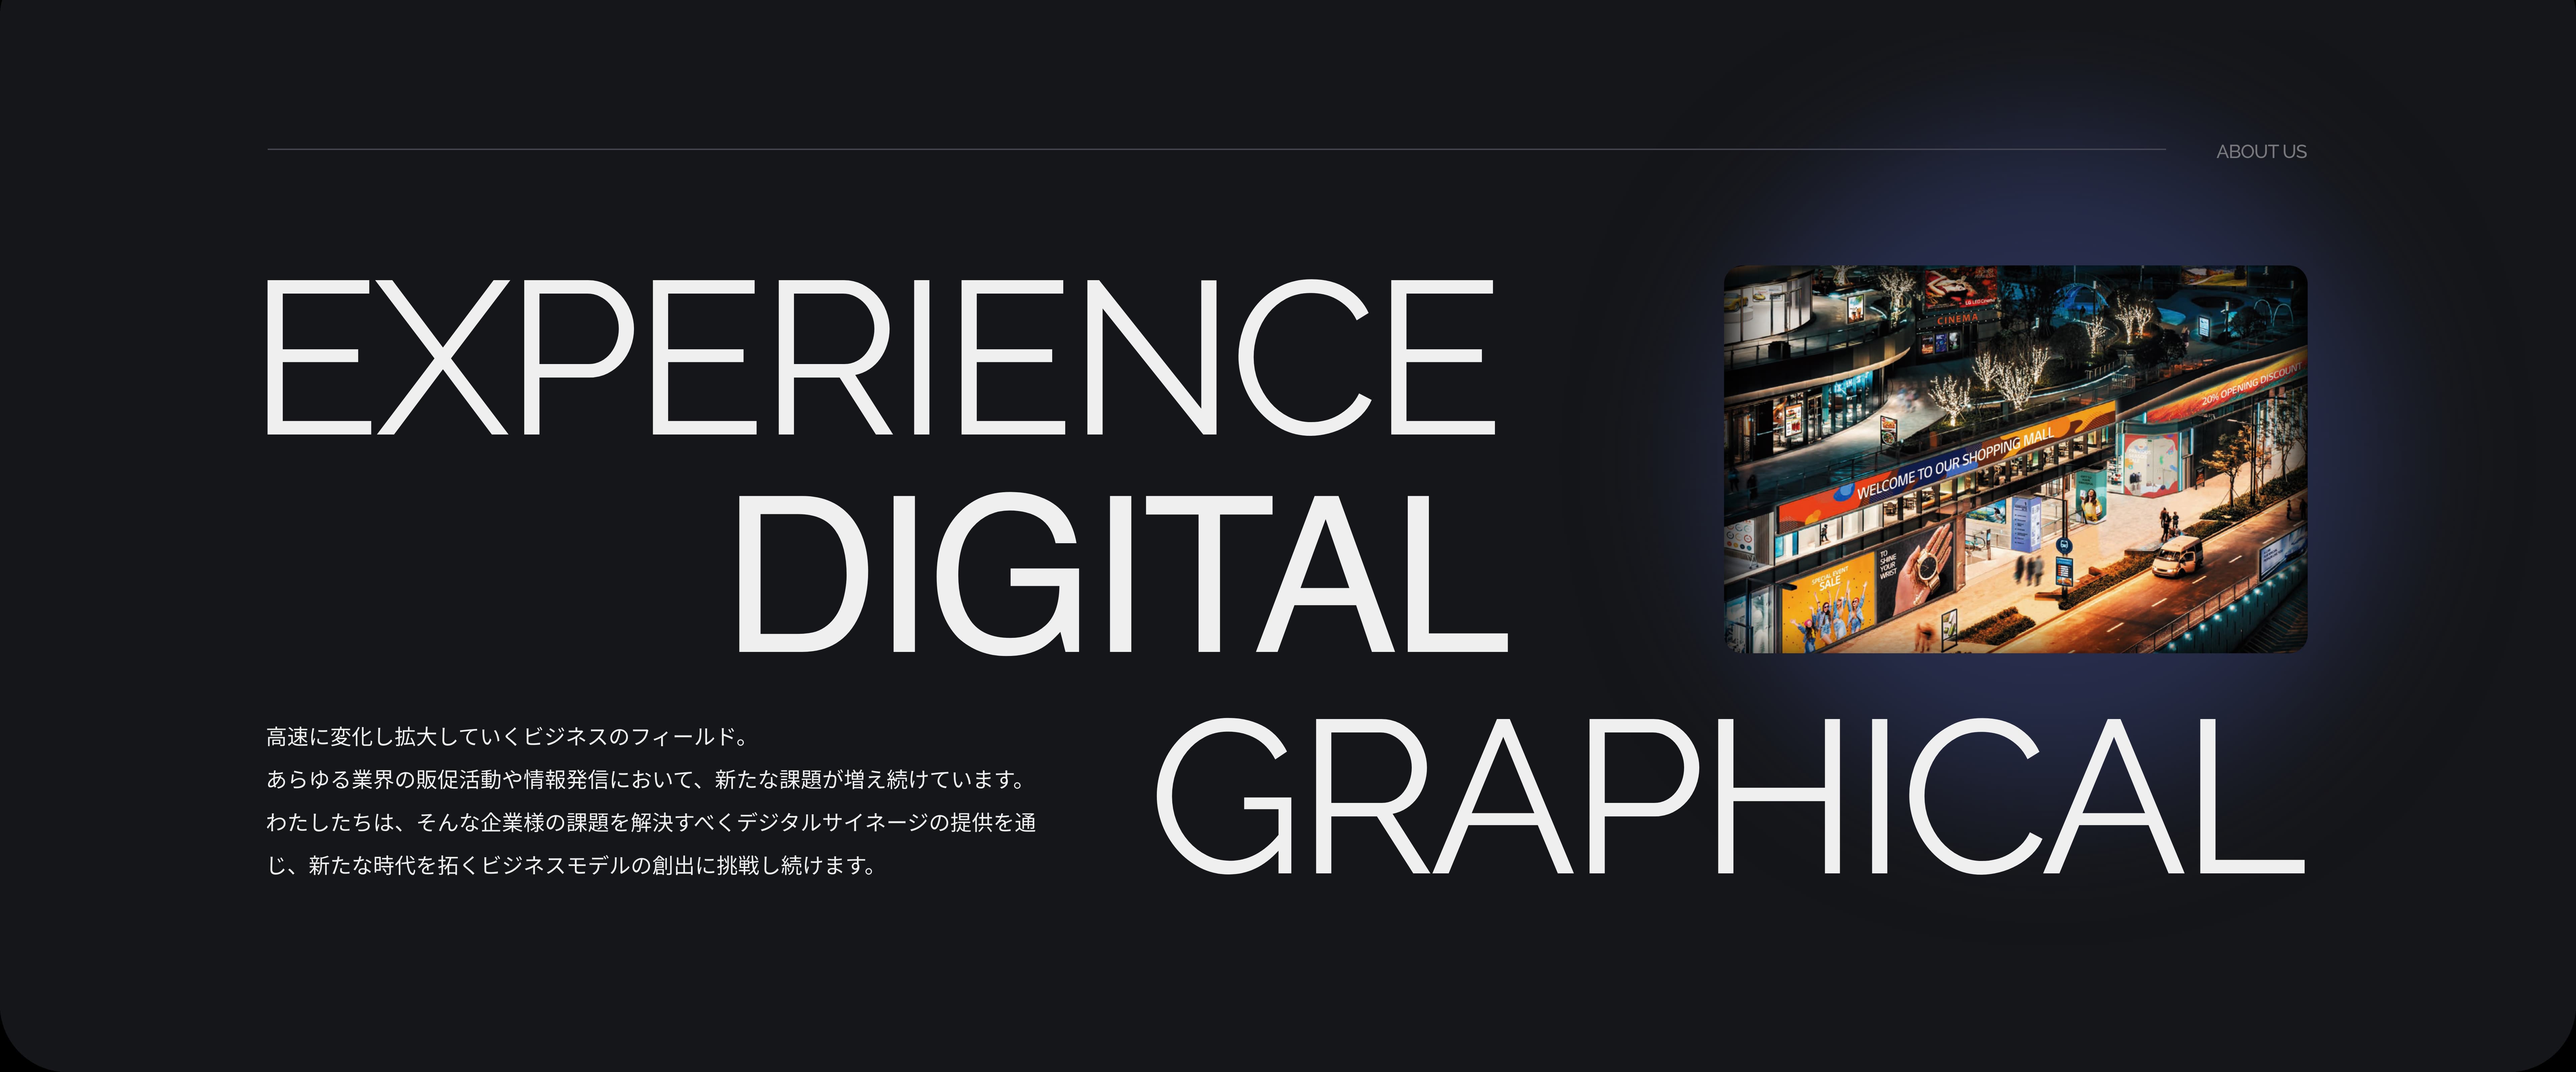 株式会社Digital Vision Industries about